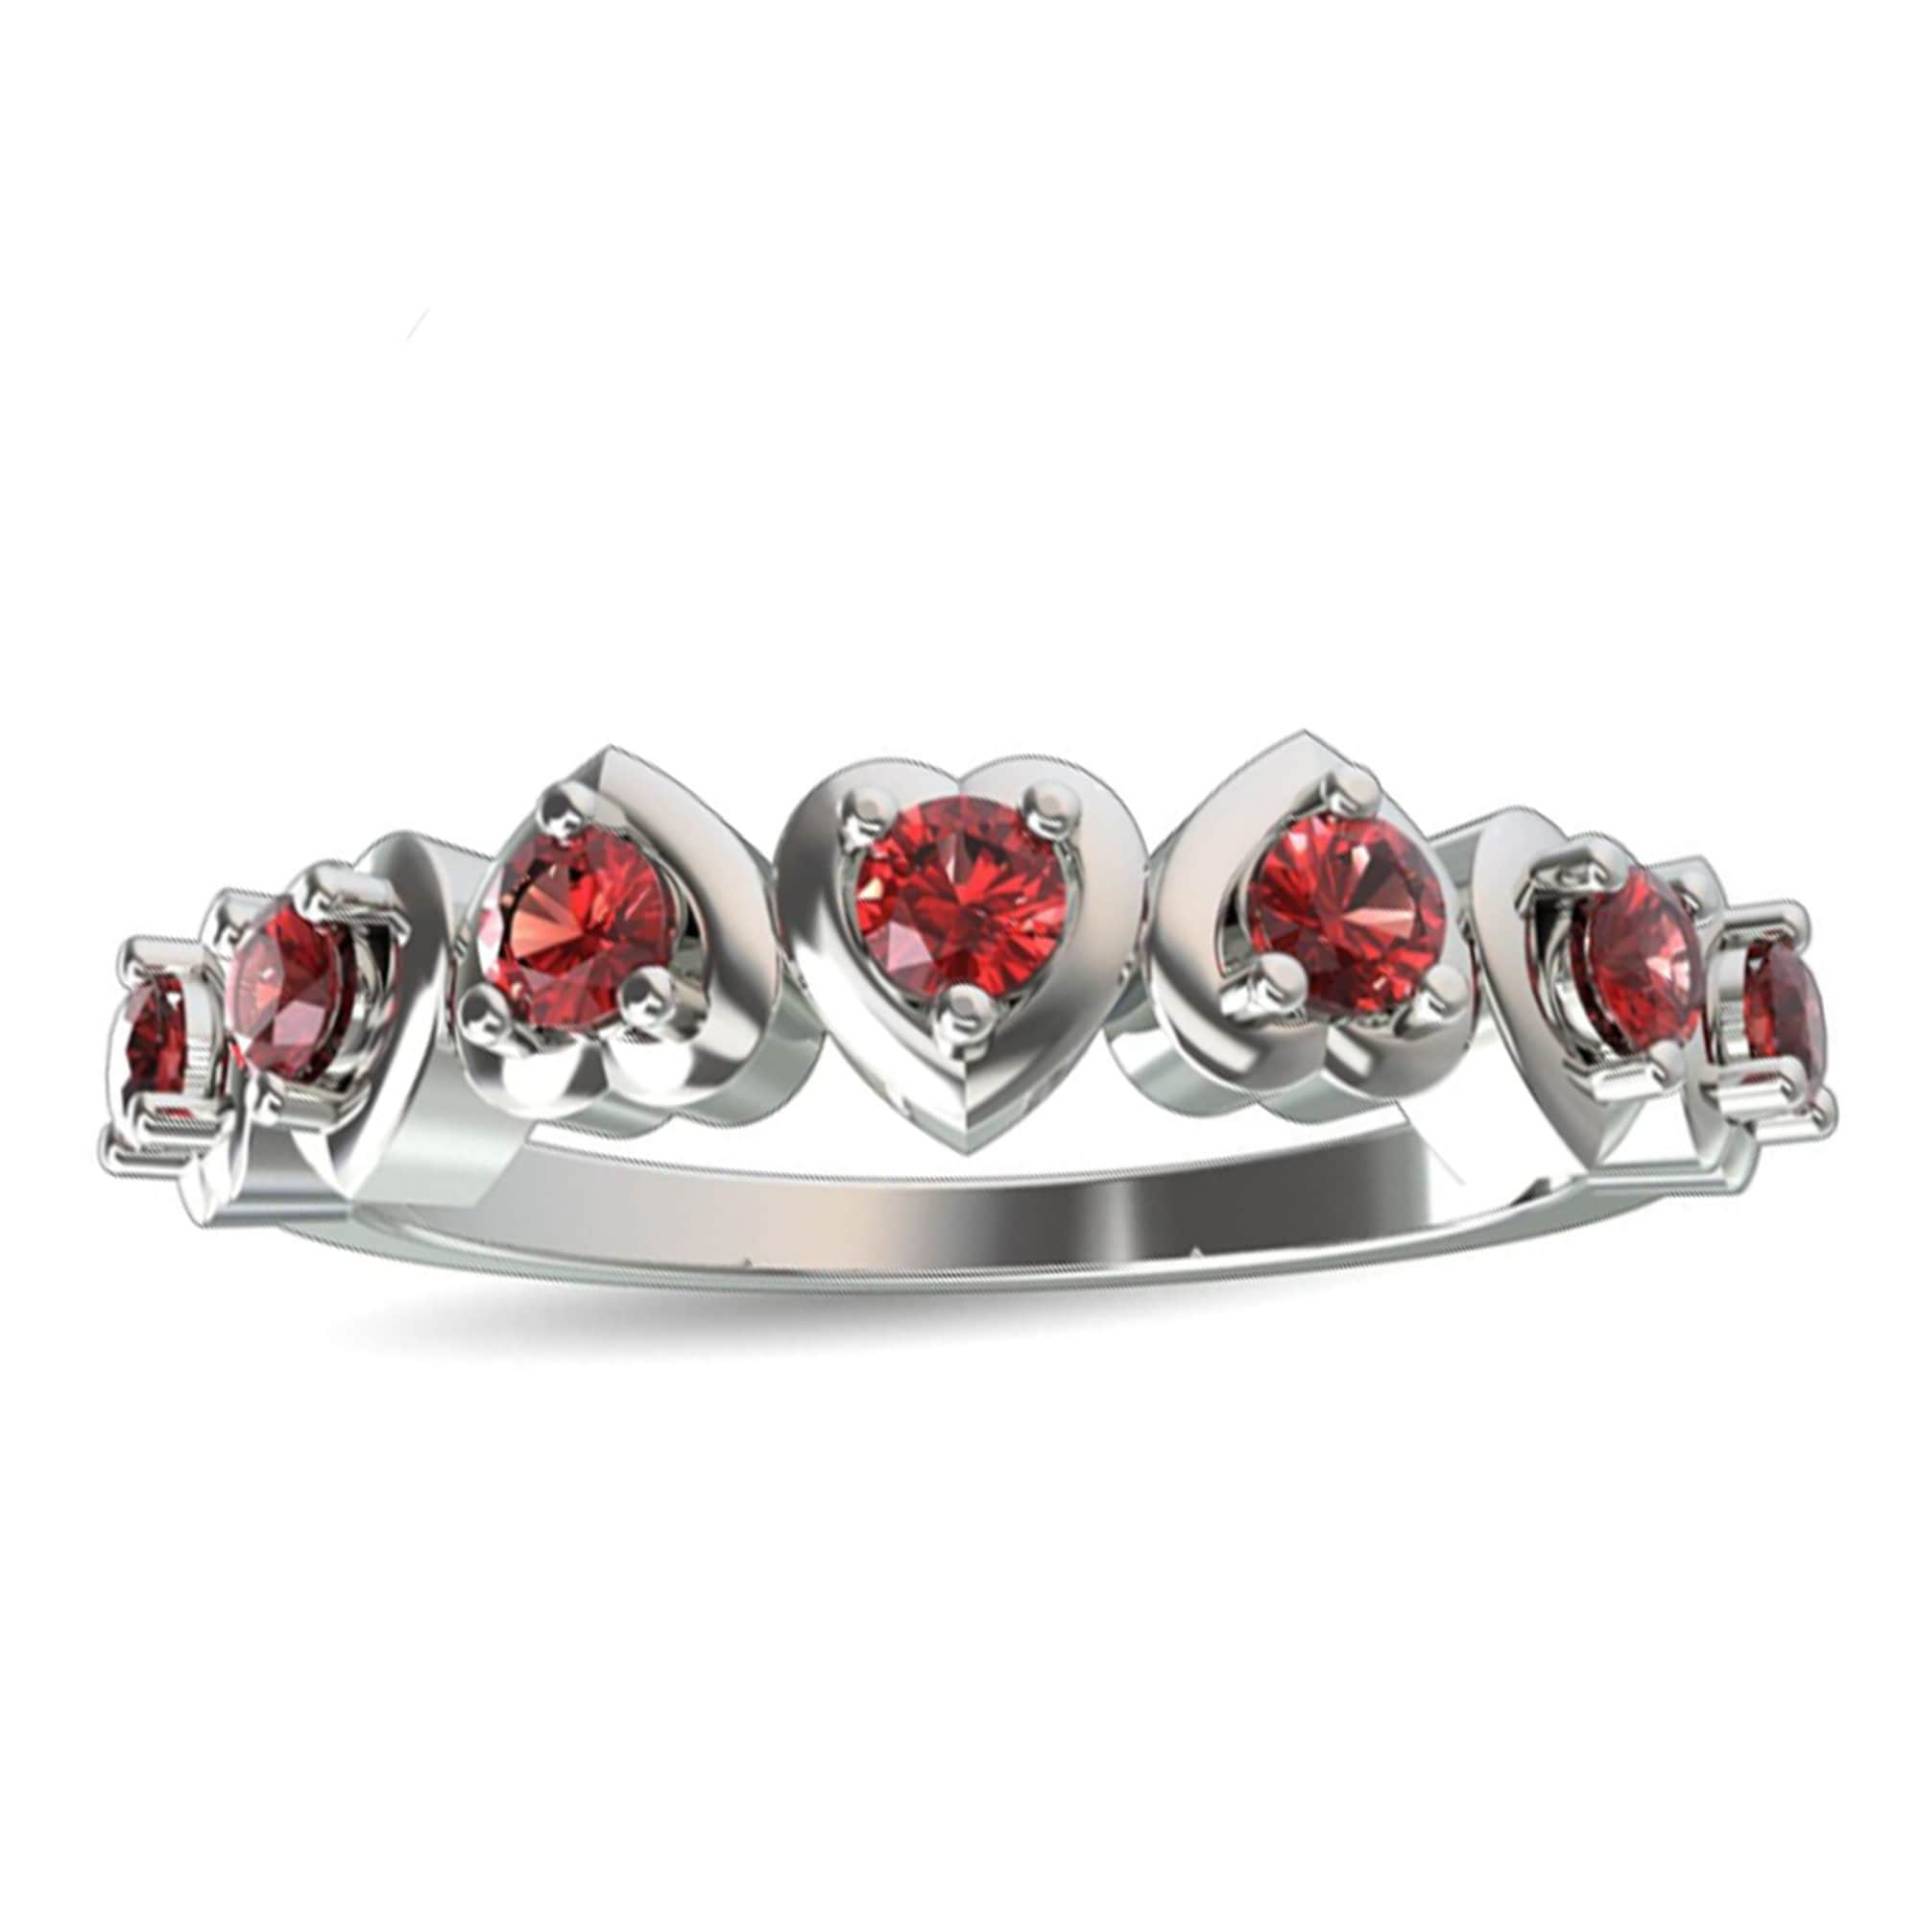 Natürlicher Herz Form Silber Ring, Liebe Versprechen Geschenk Roter Granat Verlobungsring, Jahrestag Halb Ewigkeit Band Ring von Shannonjewelsin